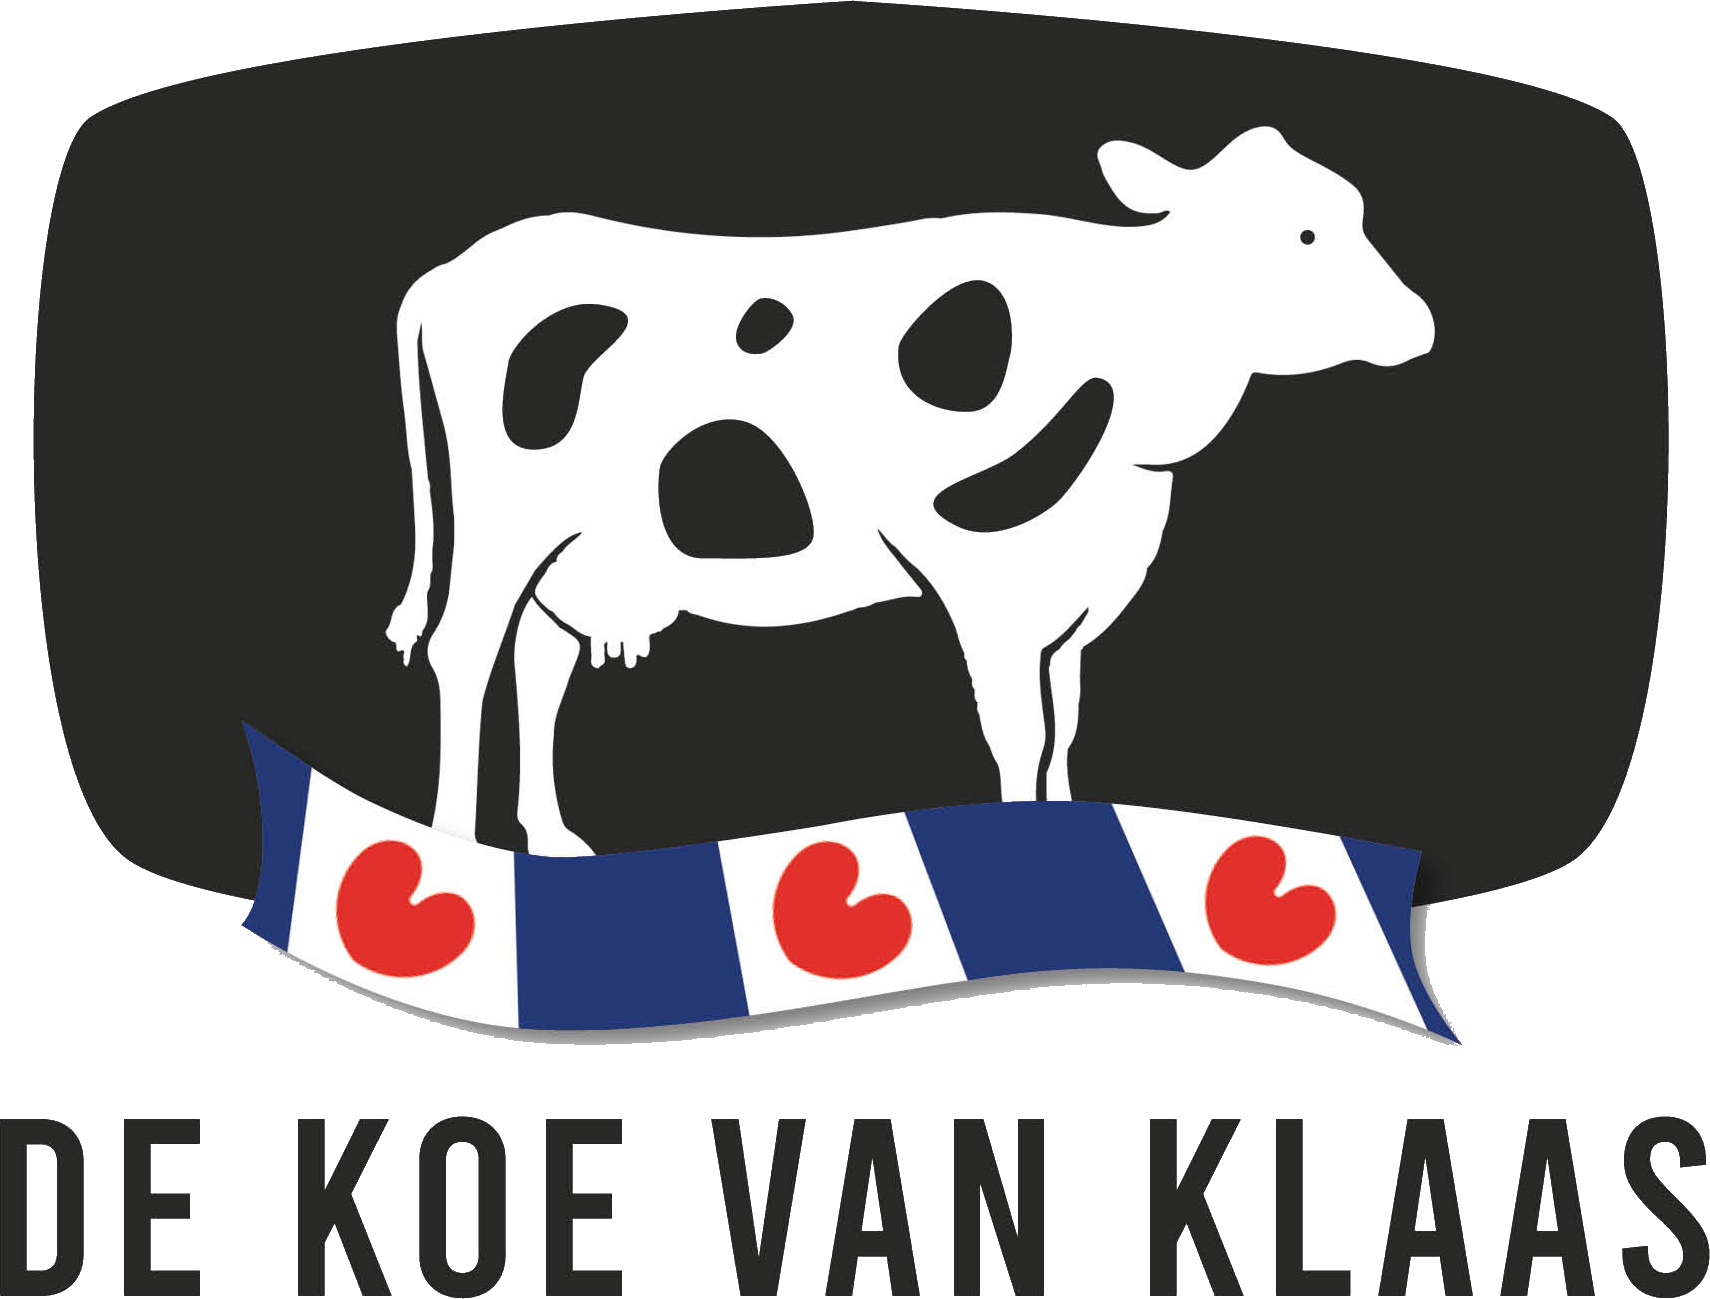 De koe van Klaas logo